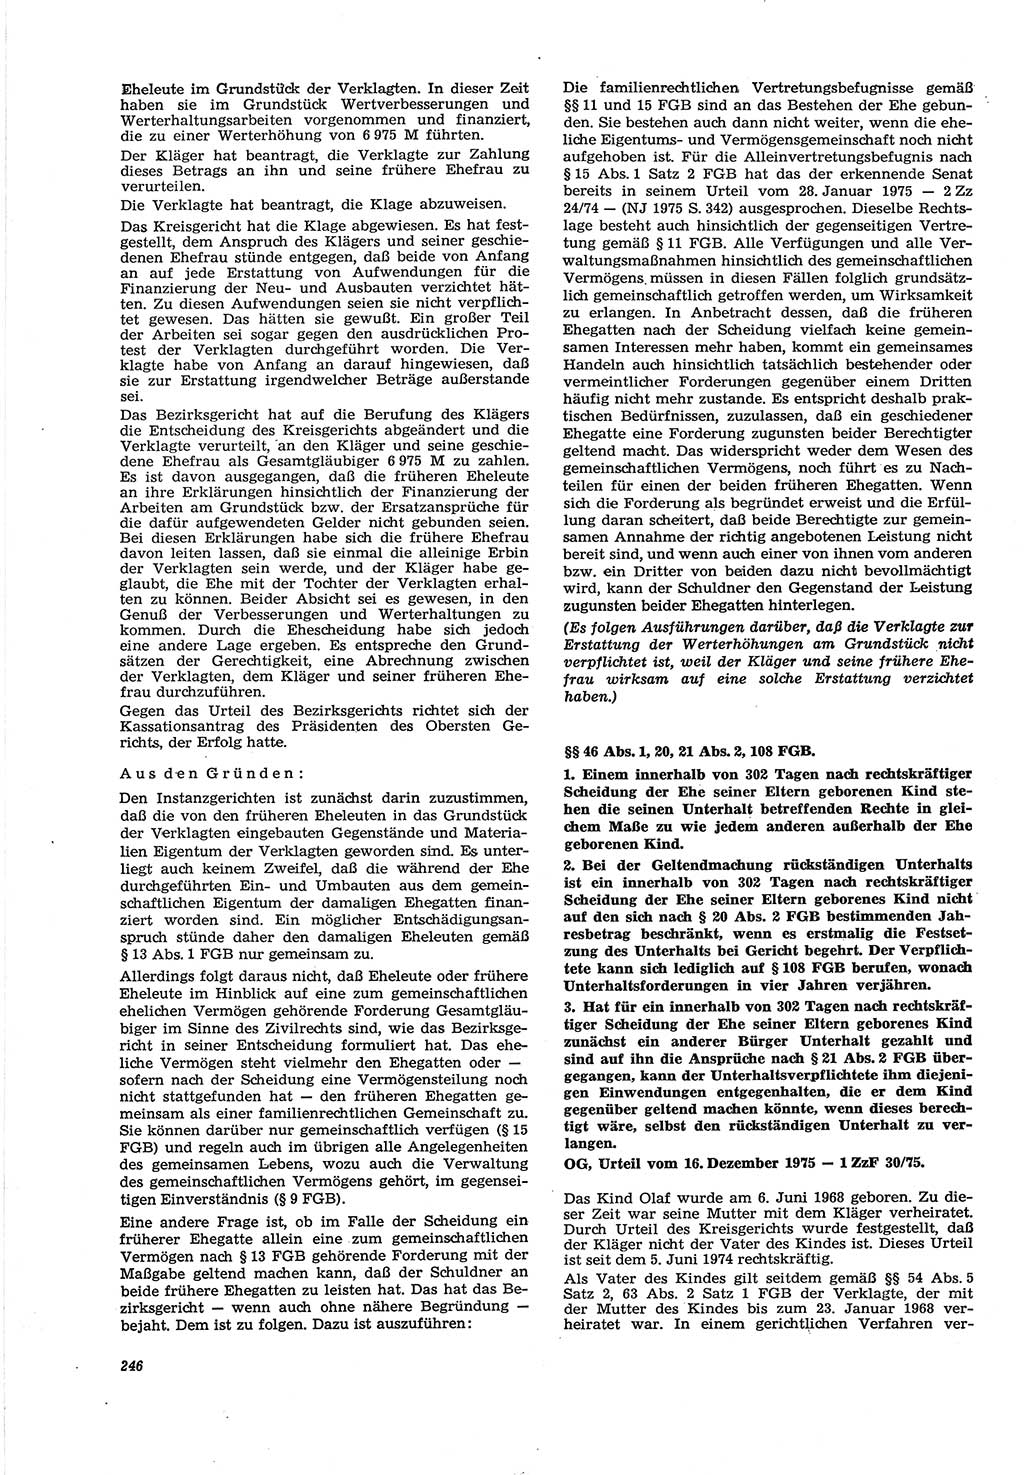 Neue Justiz (NJ), Zeitschrift für Recht und Rechtswissenschaft [Deutsche Demokratische Republik (DDR)], 30. Jahrgang 1976, Seite 246 (NJ DDR 1976, S. 246)